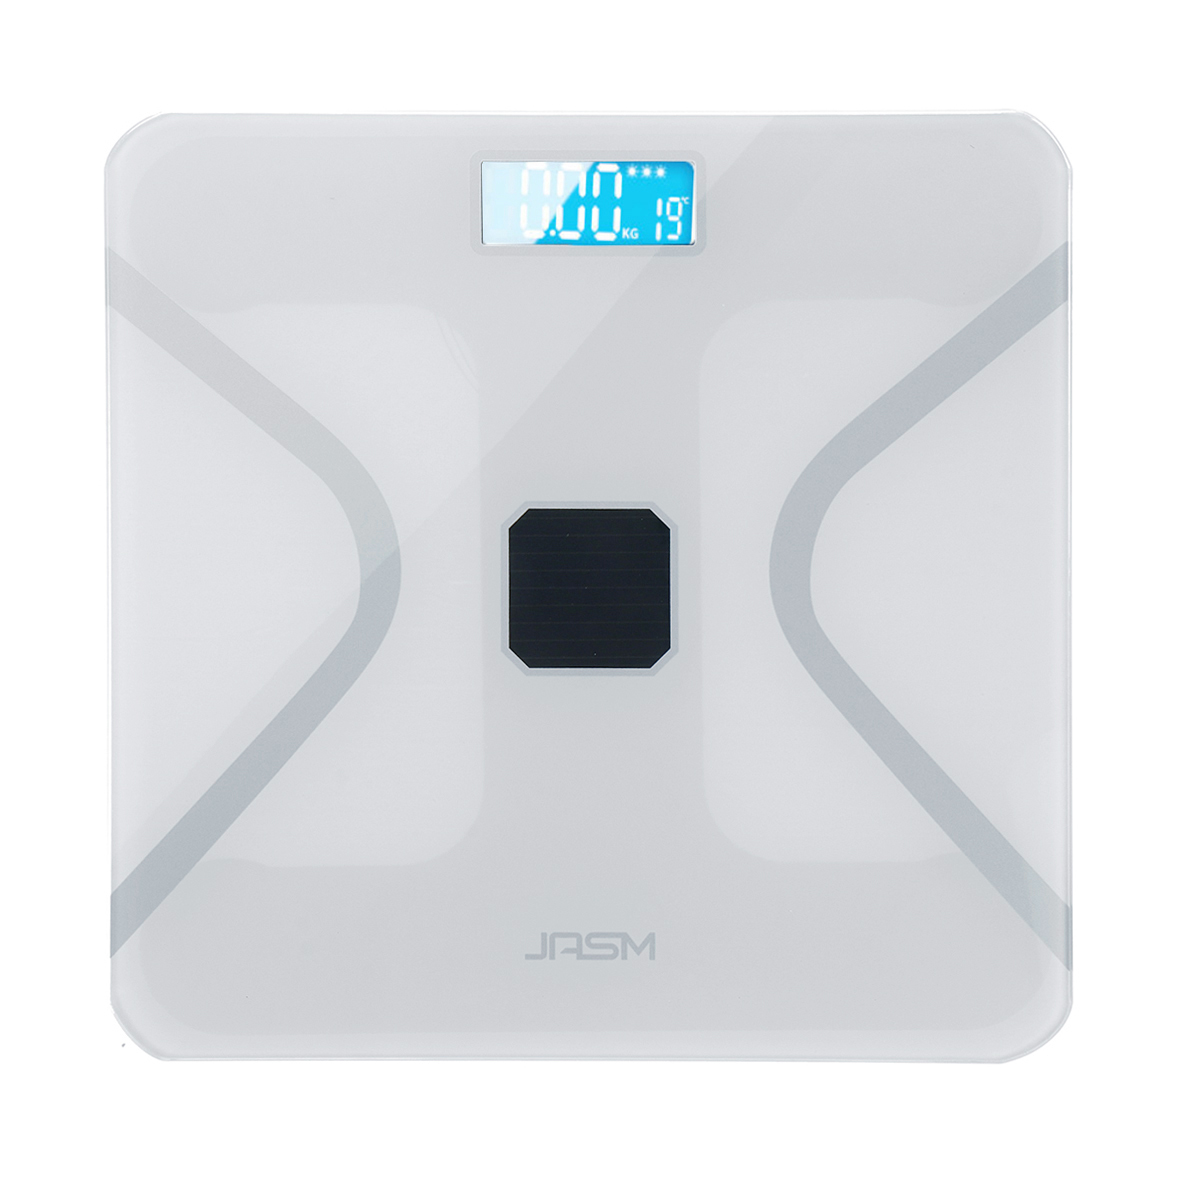 

Digital Wireless Body Fat Scale Analyzer Healthy Weight Balance Scale BMI Tester